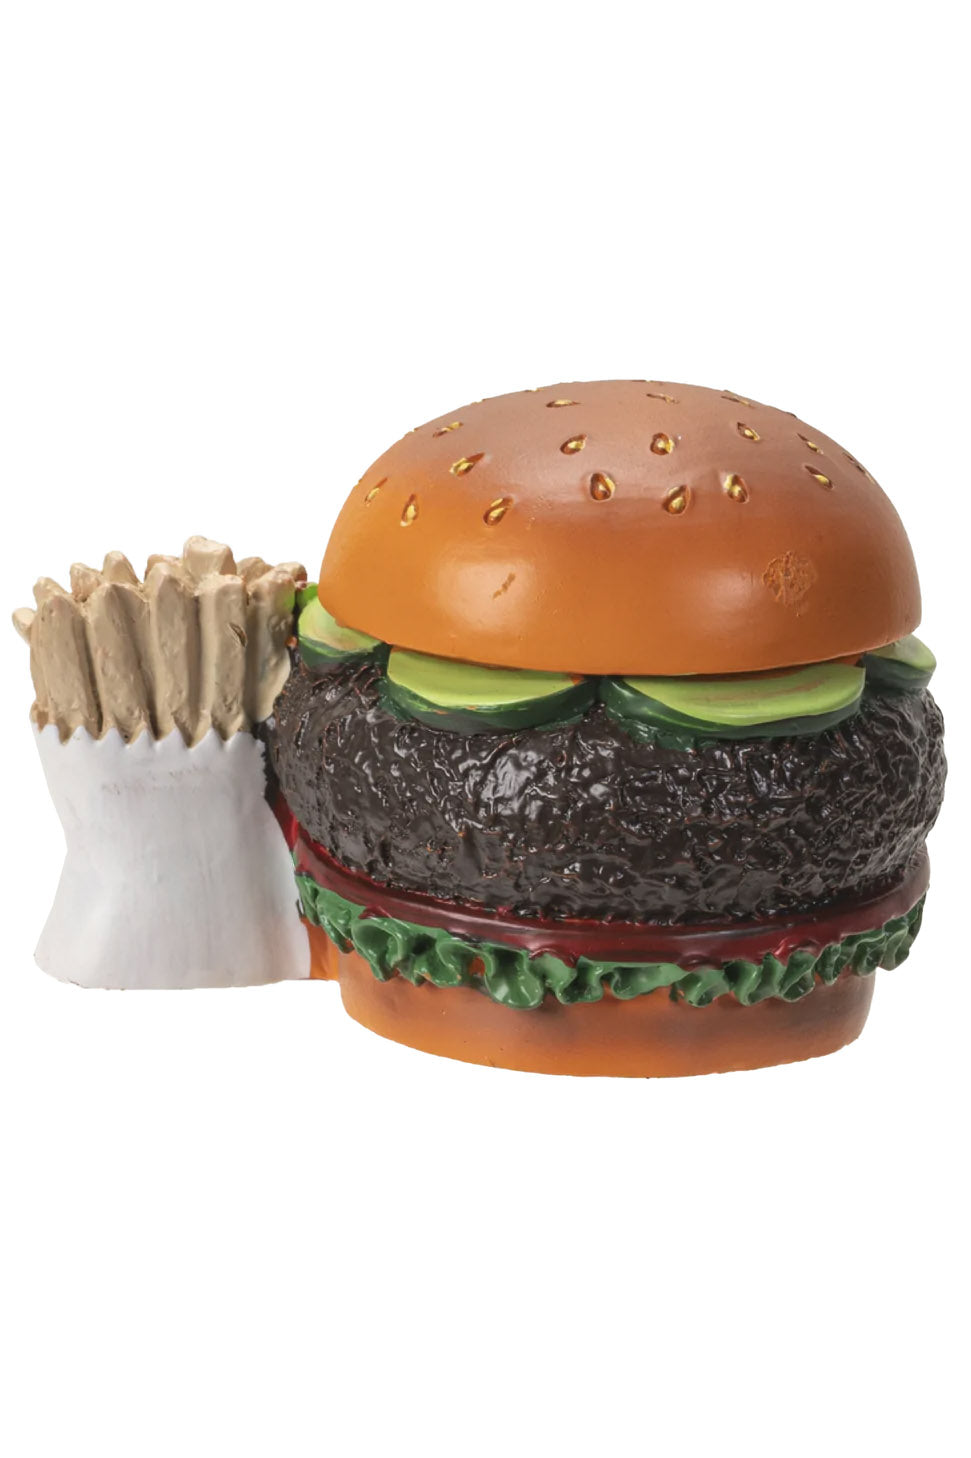 Burger the Big Dead Mac Statue